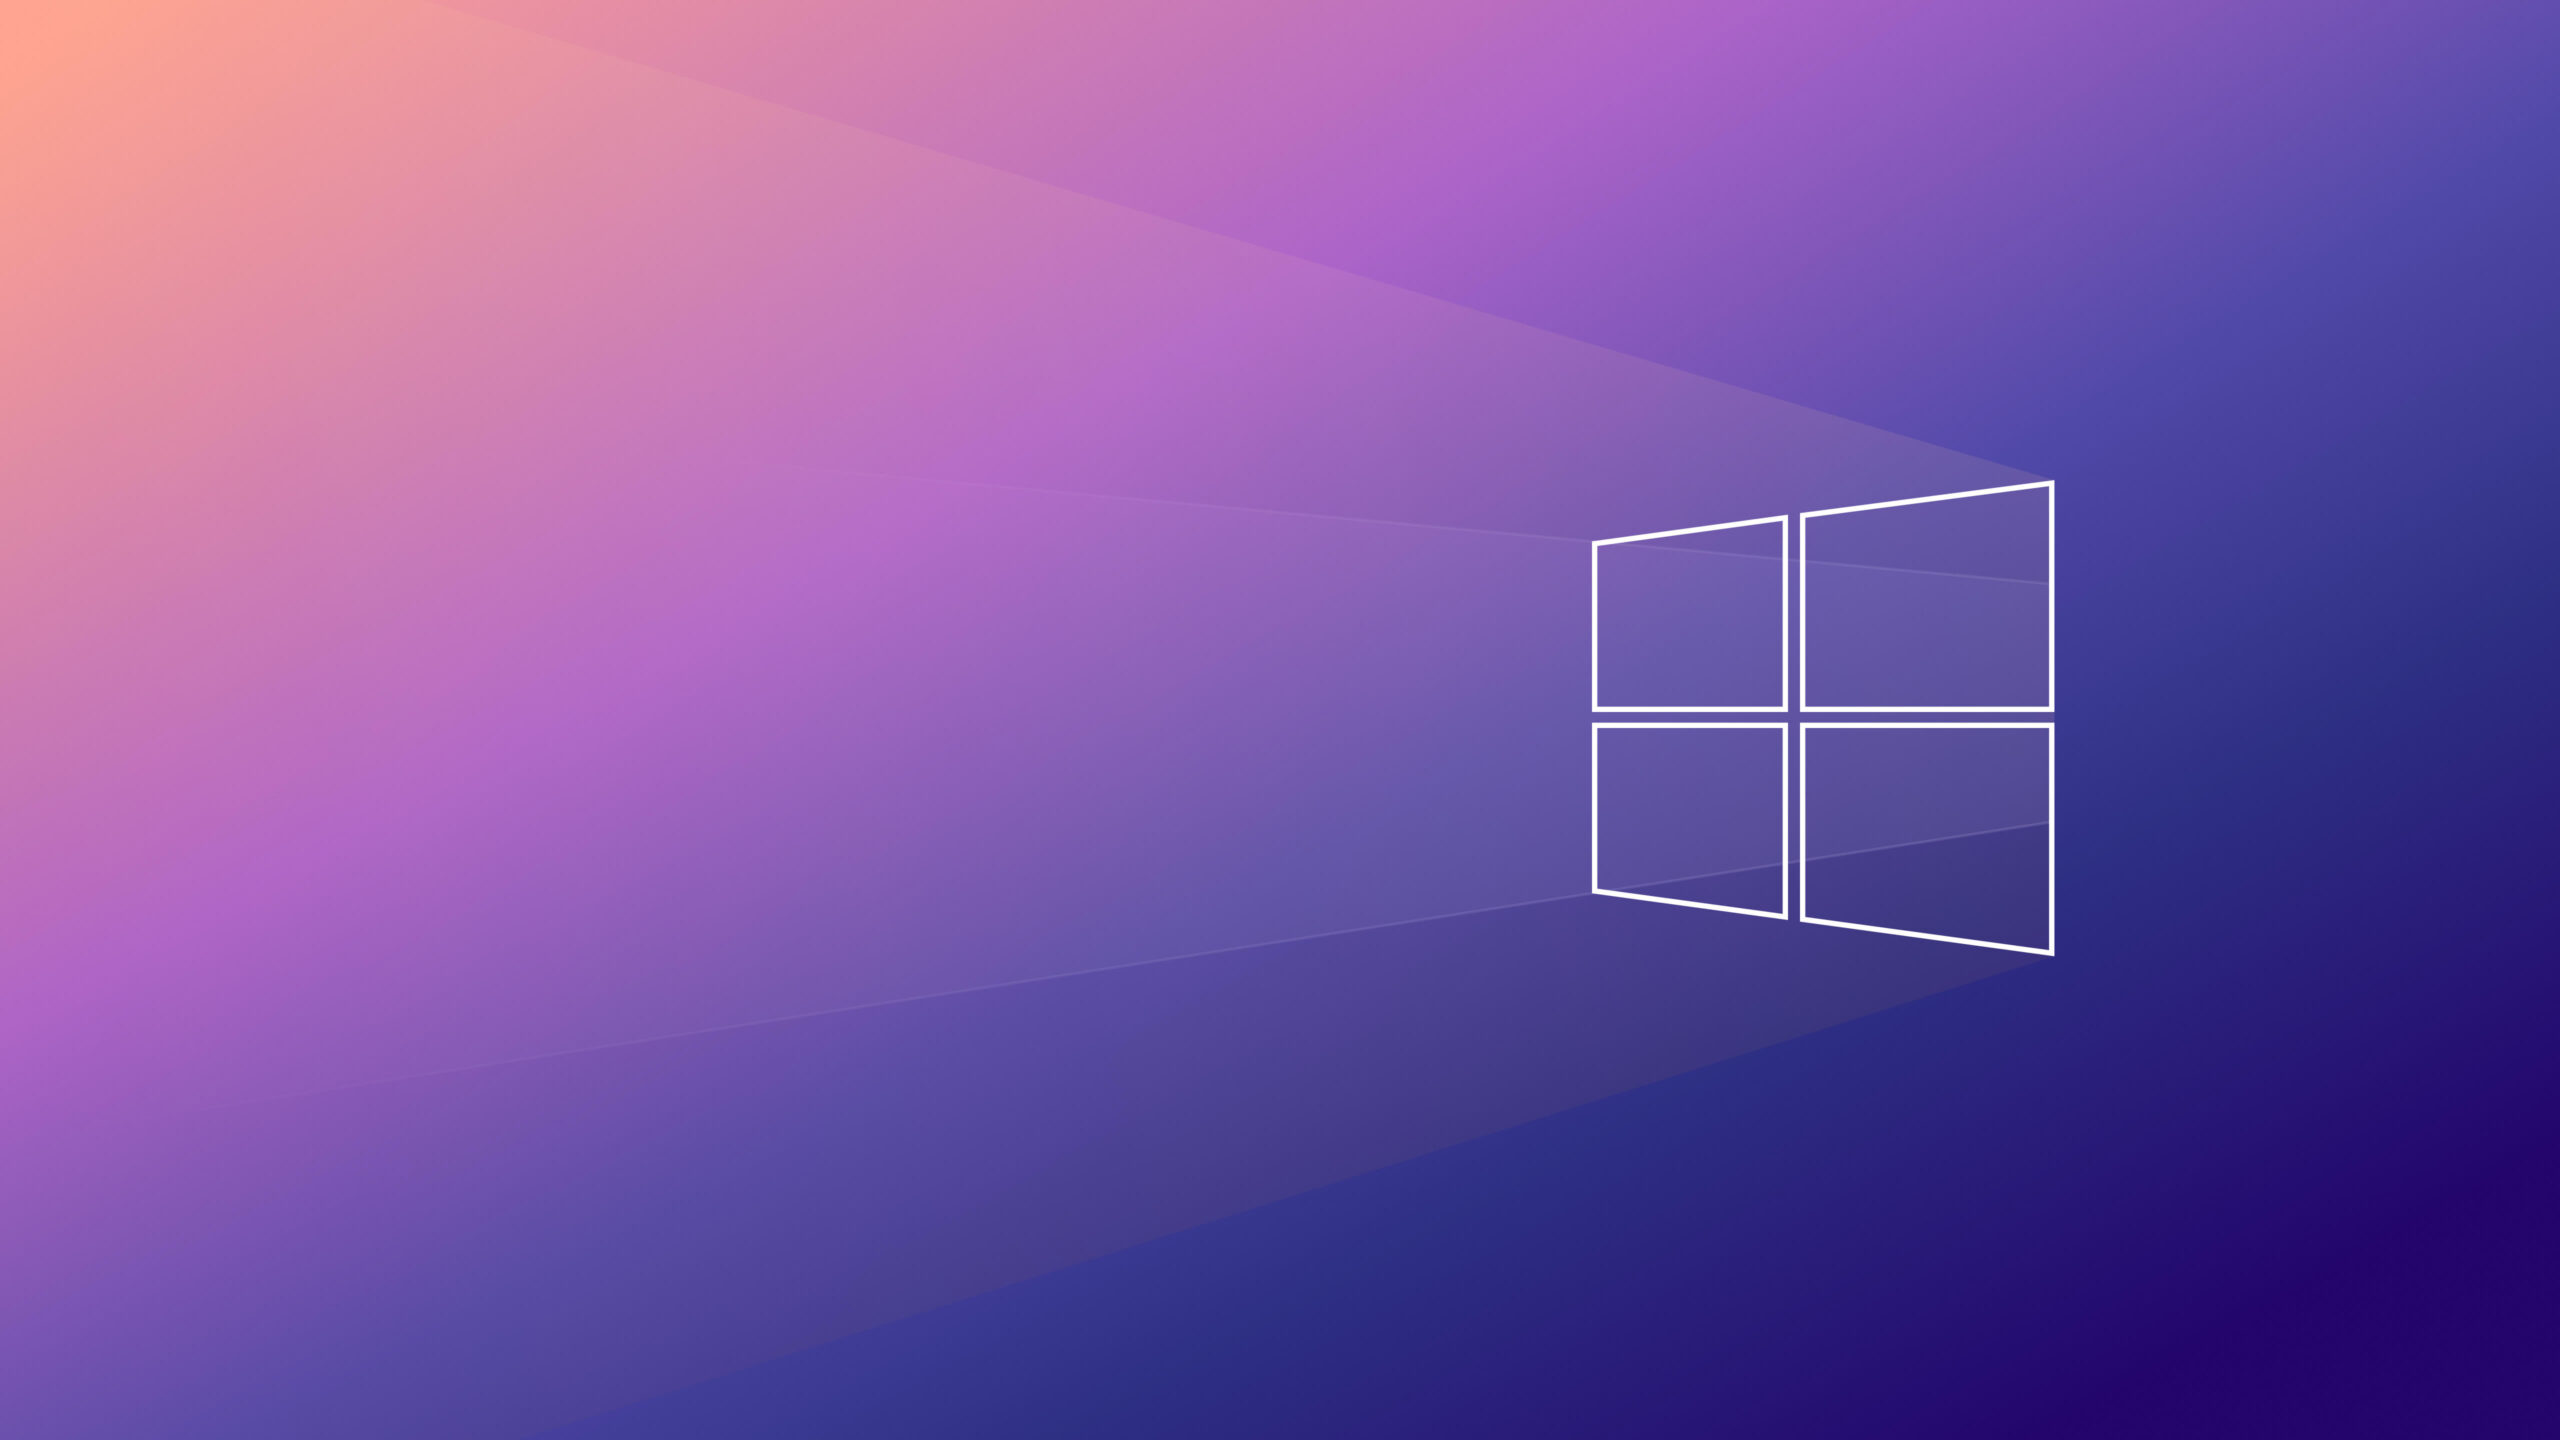 Sử dụng hình nền 4k Windows 10 để trải nghiệm sự độ sắc nét và chi tiết tuyệt vời của hình ảnh. Tận hưởng các tài nguyên hình ảnh cao cấp của Windows 10 để tăng trải nghiệm làm việc và giải trí của bạn. Hình nền 4k Windows 10 sẽ đưa bạn đến những không gian mới và mang đến cho bạn trải nghiệm tuyệt vời.